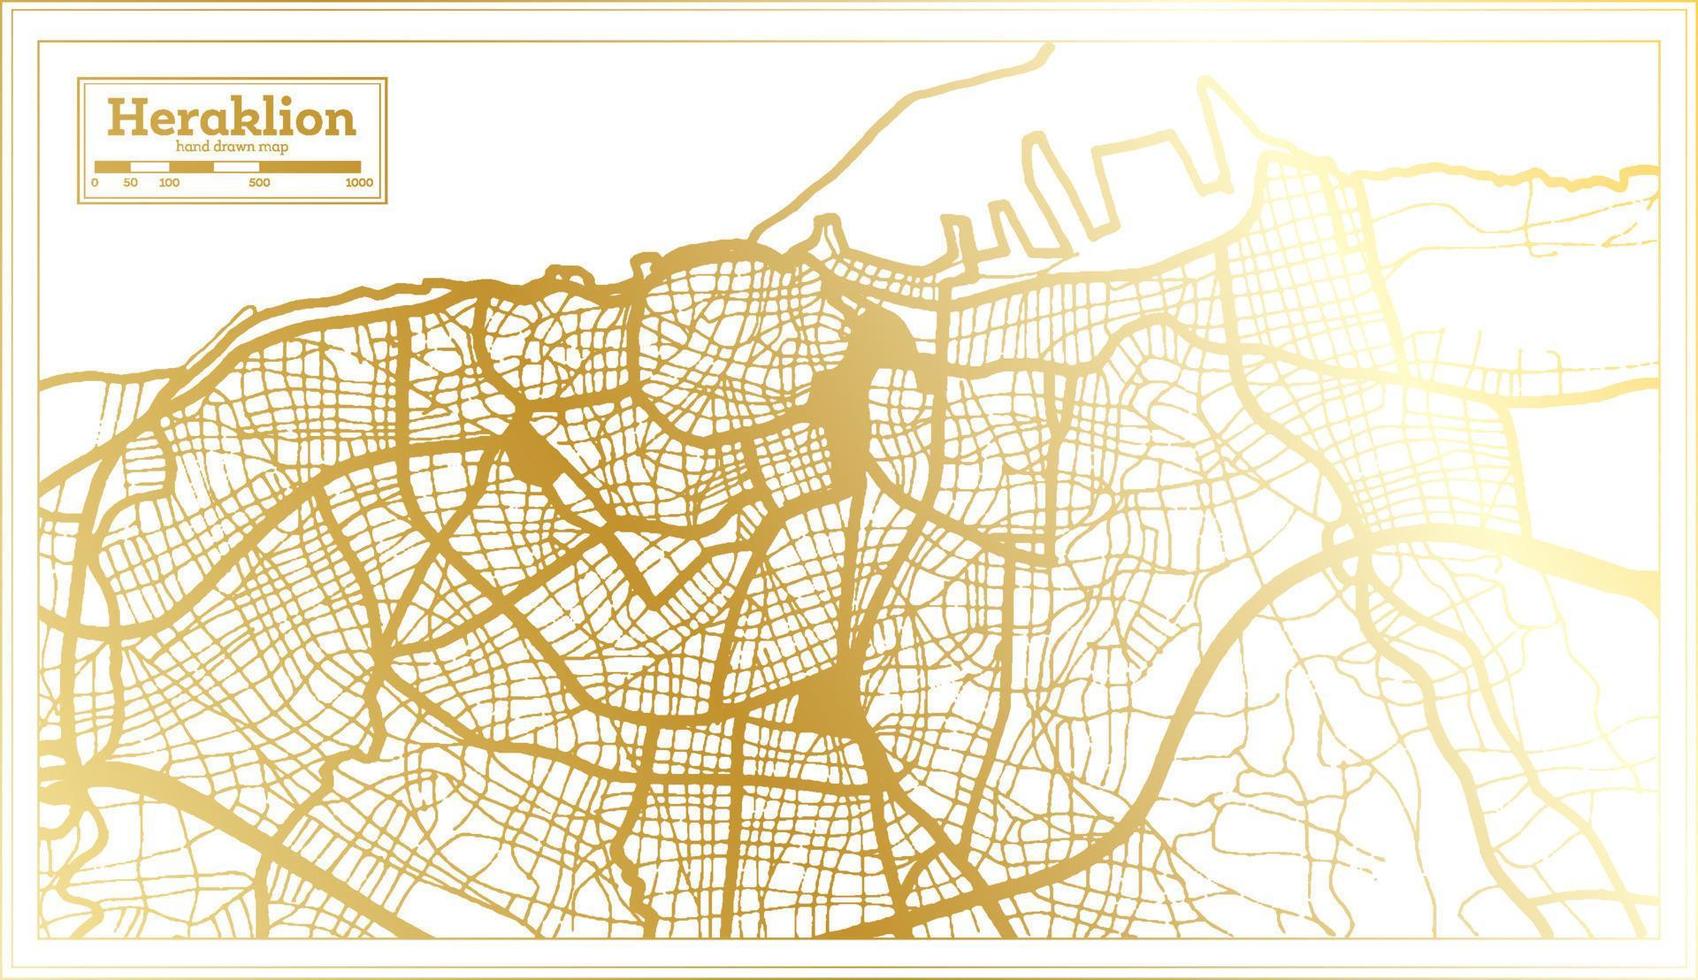 plan de la ville d'héraklion en grèce dans un style rétro de couleur dorée. carte muette. vecteur